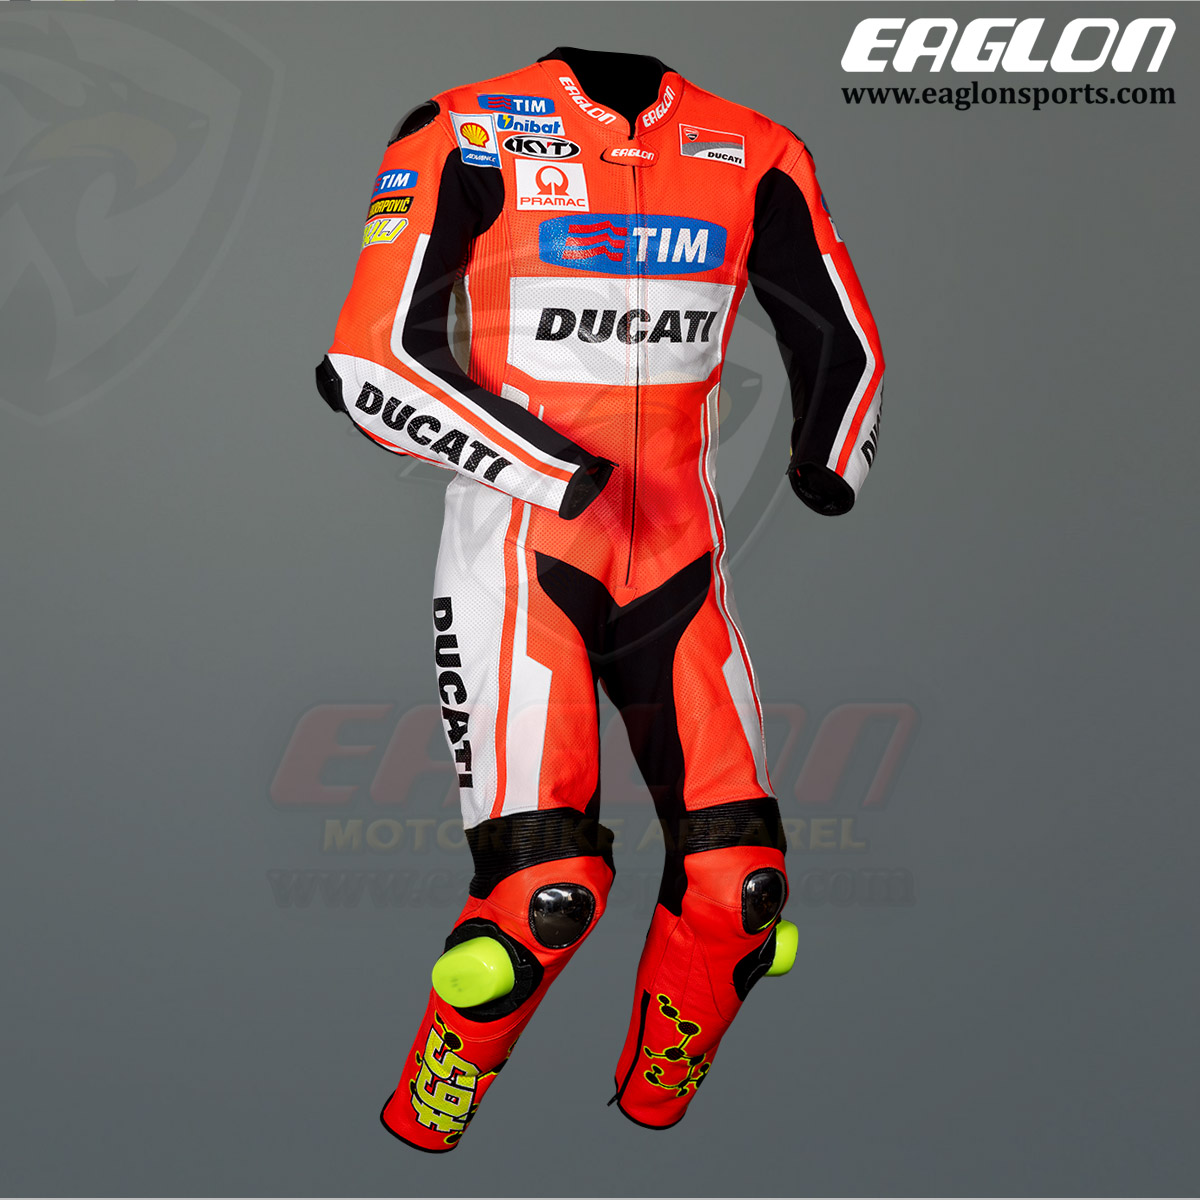 Andrea-Iannone-Ducati-MotoGP-2015-Leather-Riding-Suit